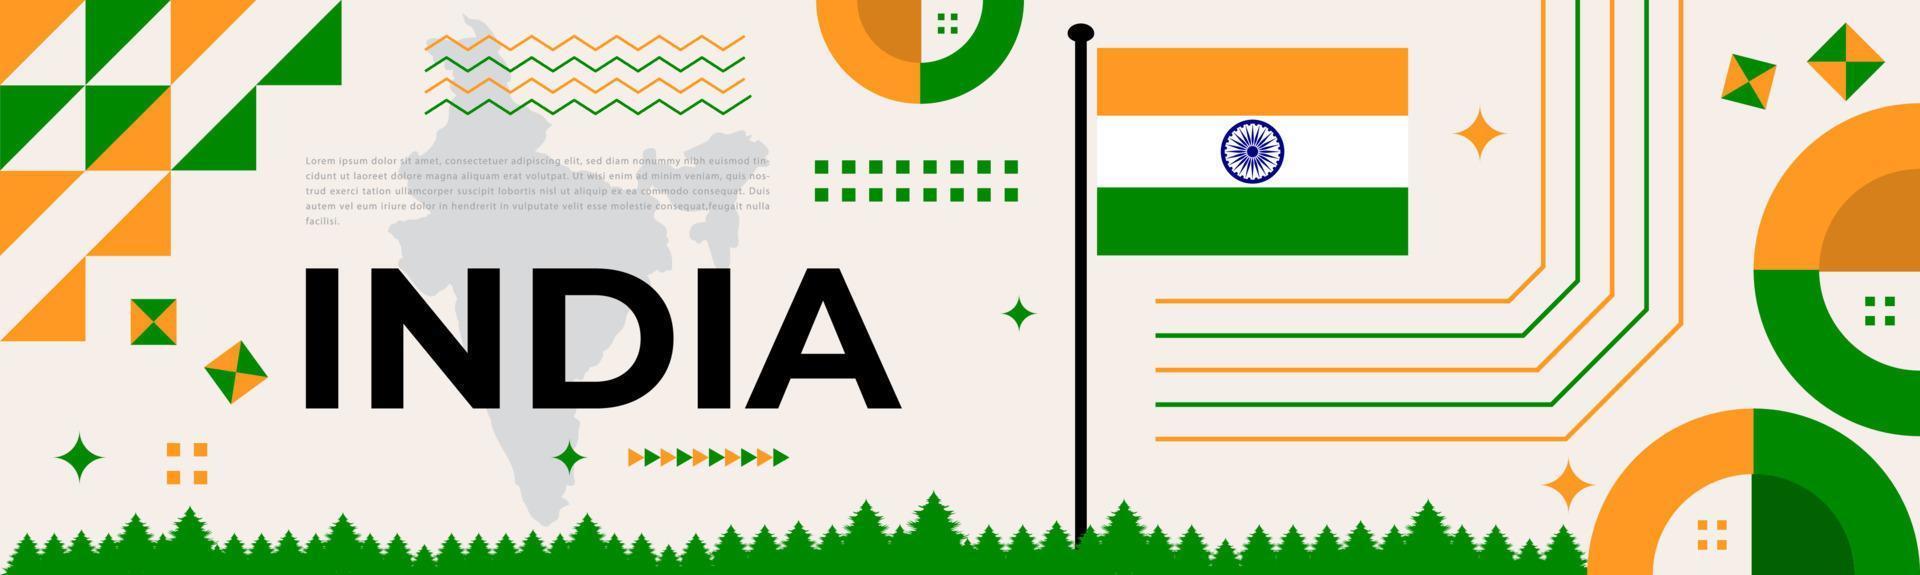 Índia nacional dia bandeira com mapa, bandeira cores tema fundo e geométrico abstrato retro verde branco laranja verde Projeto. indiano independência dia tema. branco fundo vetor ilustração